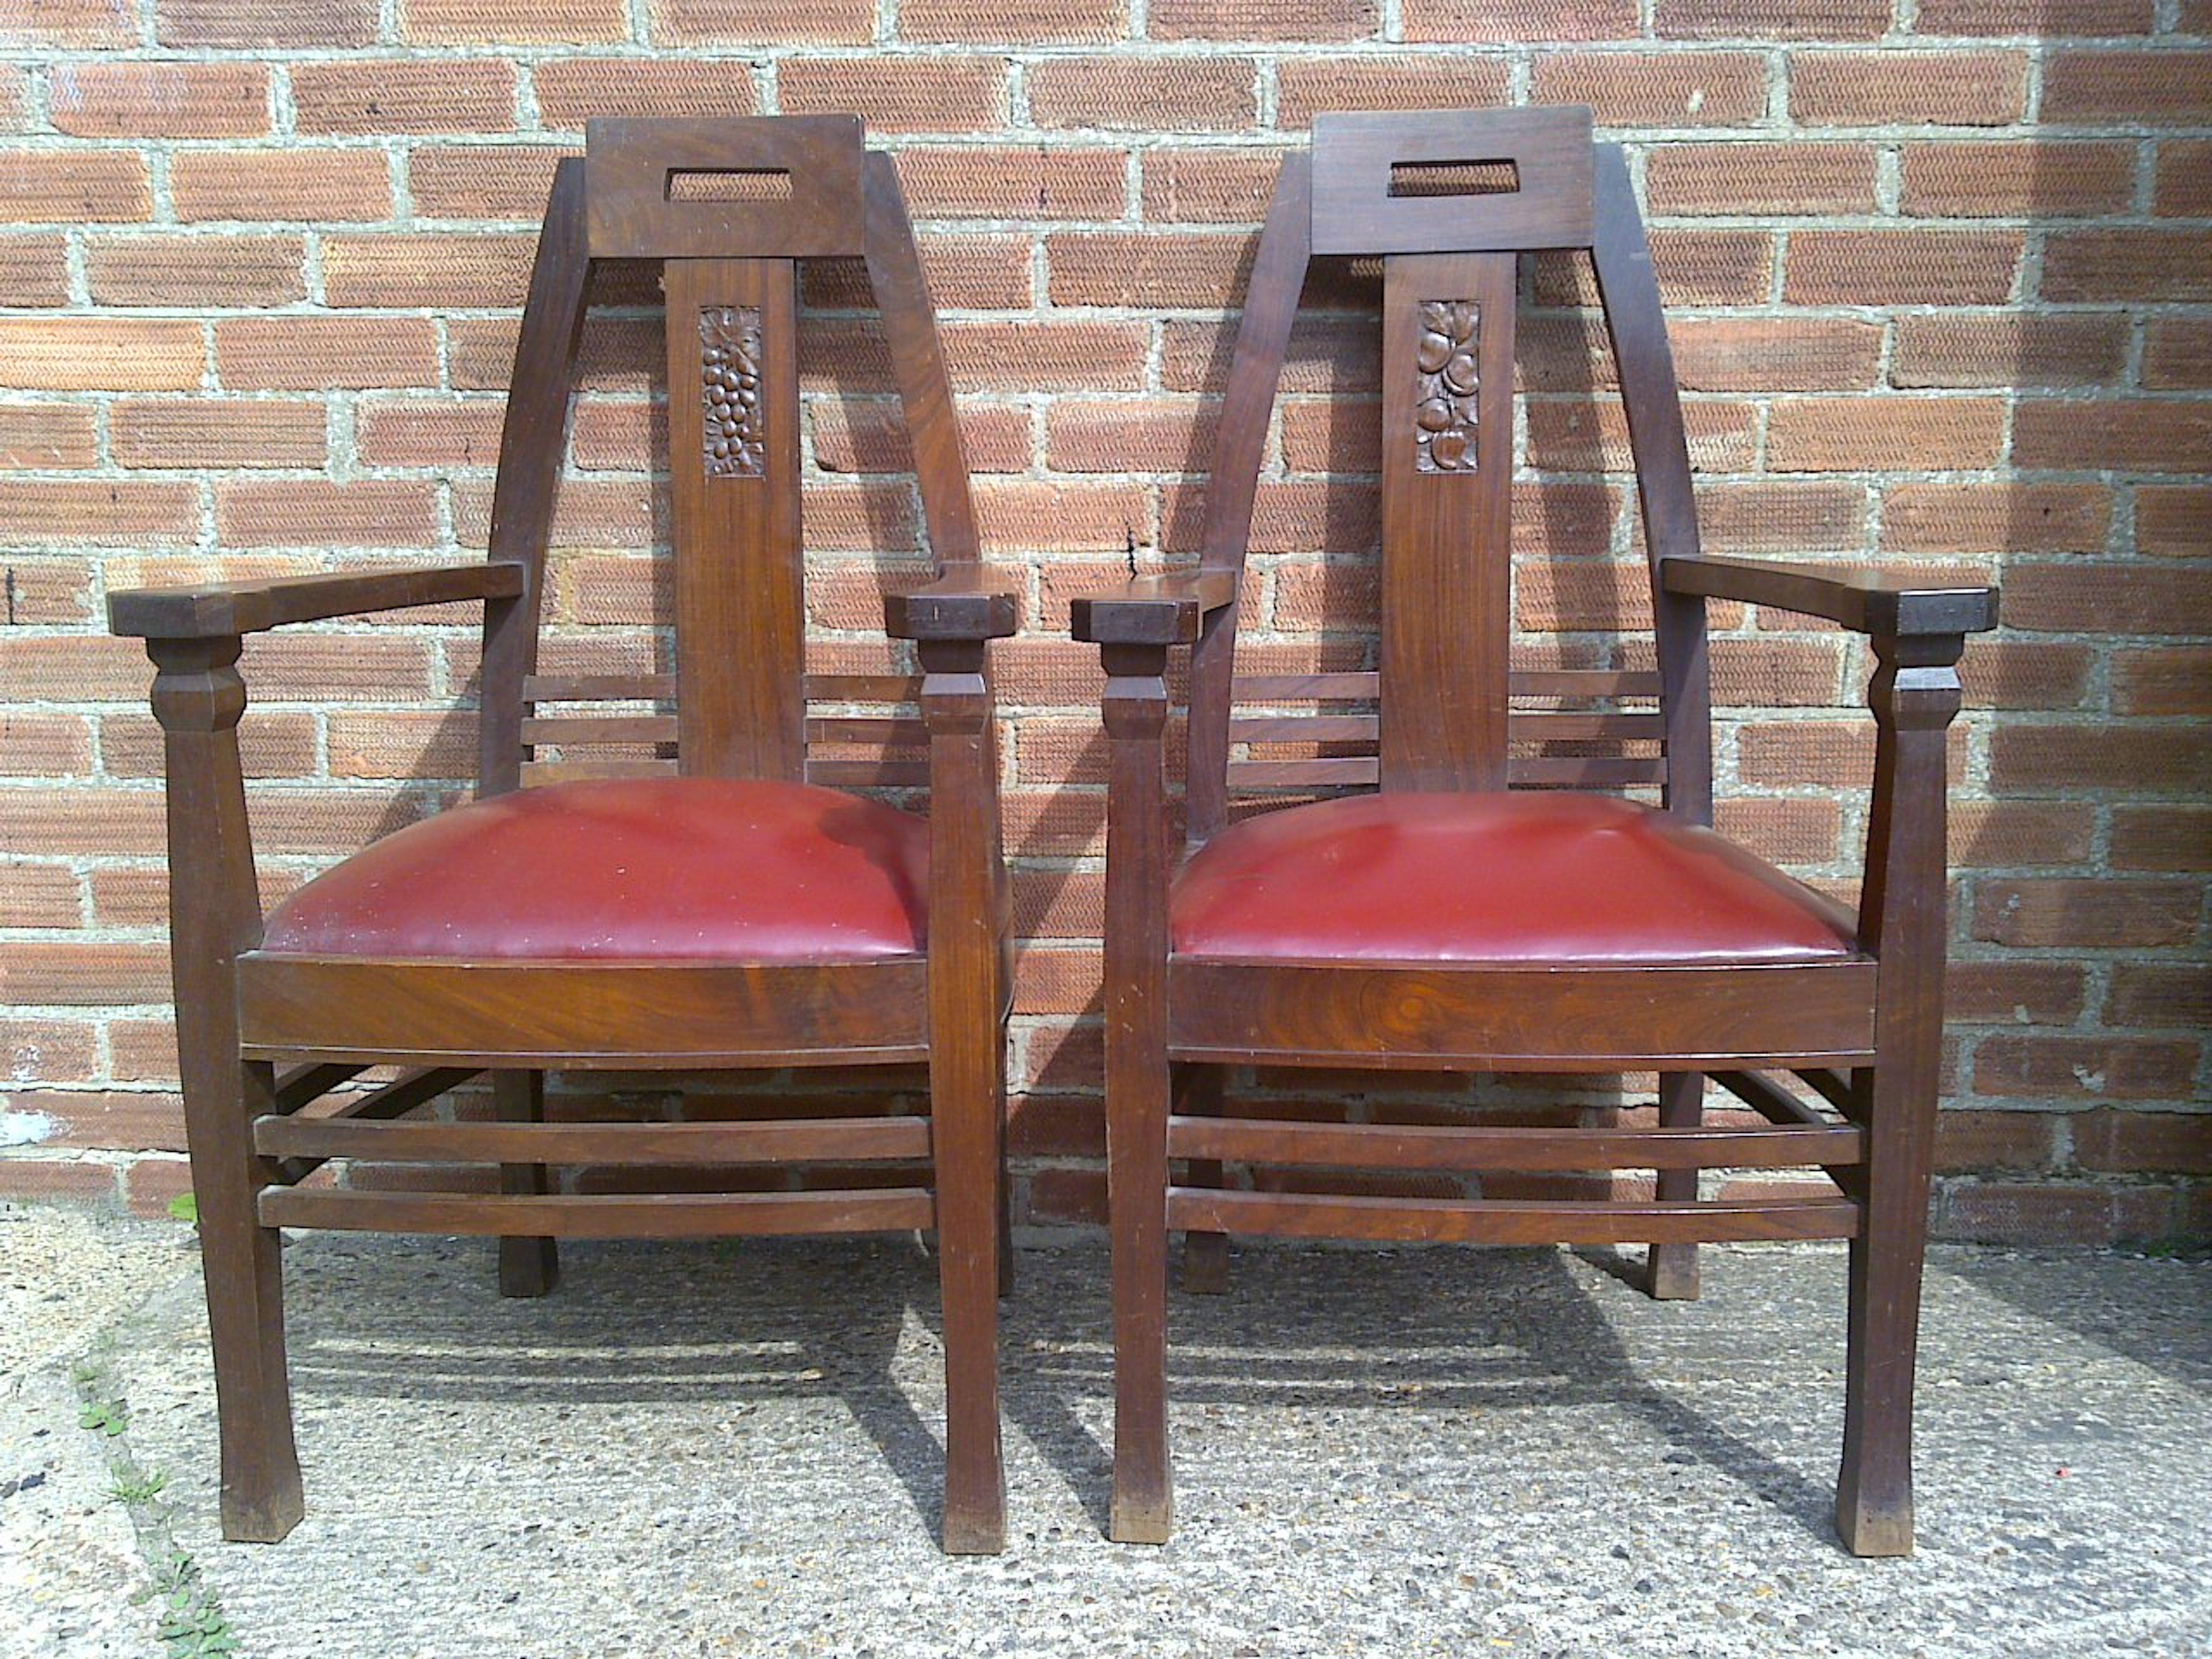 Peter Behrens, une paire de fauteuils en acajou Jugendstil, dont les sièges ont été recouverts de cuir rouge.
Voir Whiting, Michael et Gere, Charlotte 